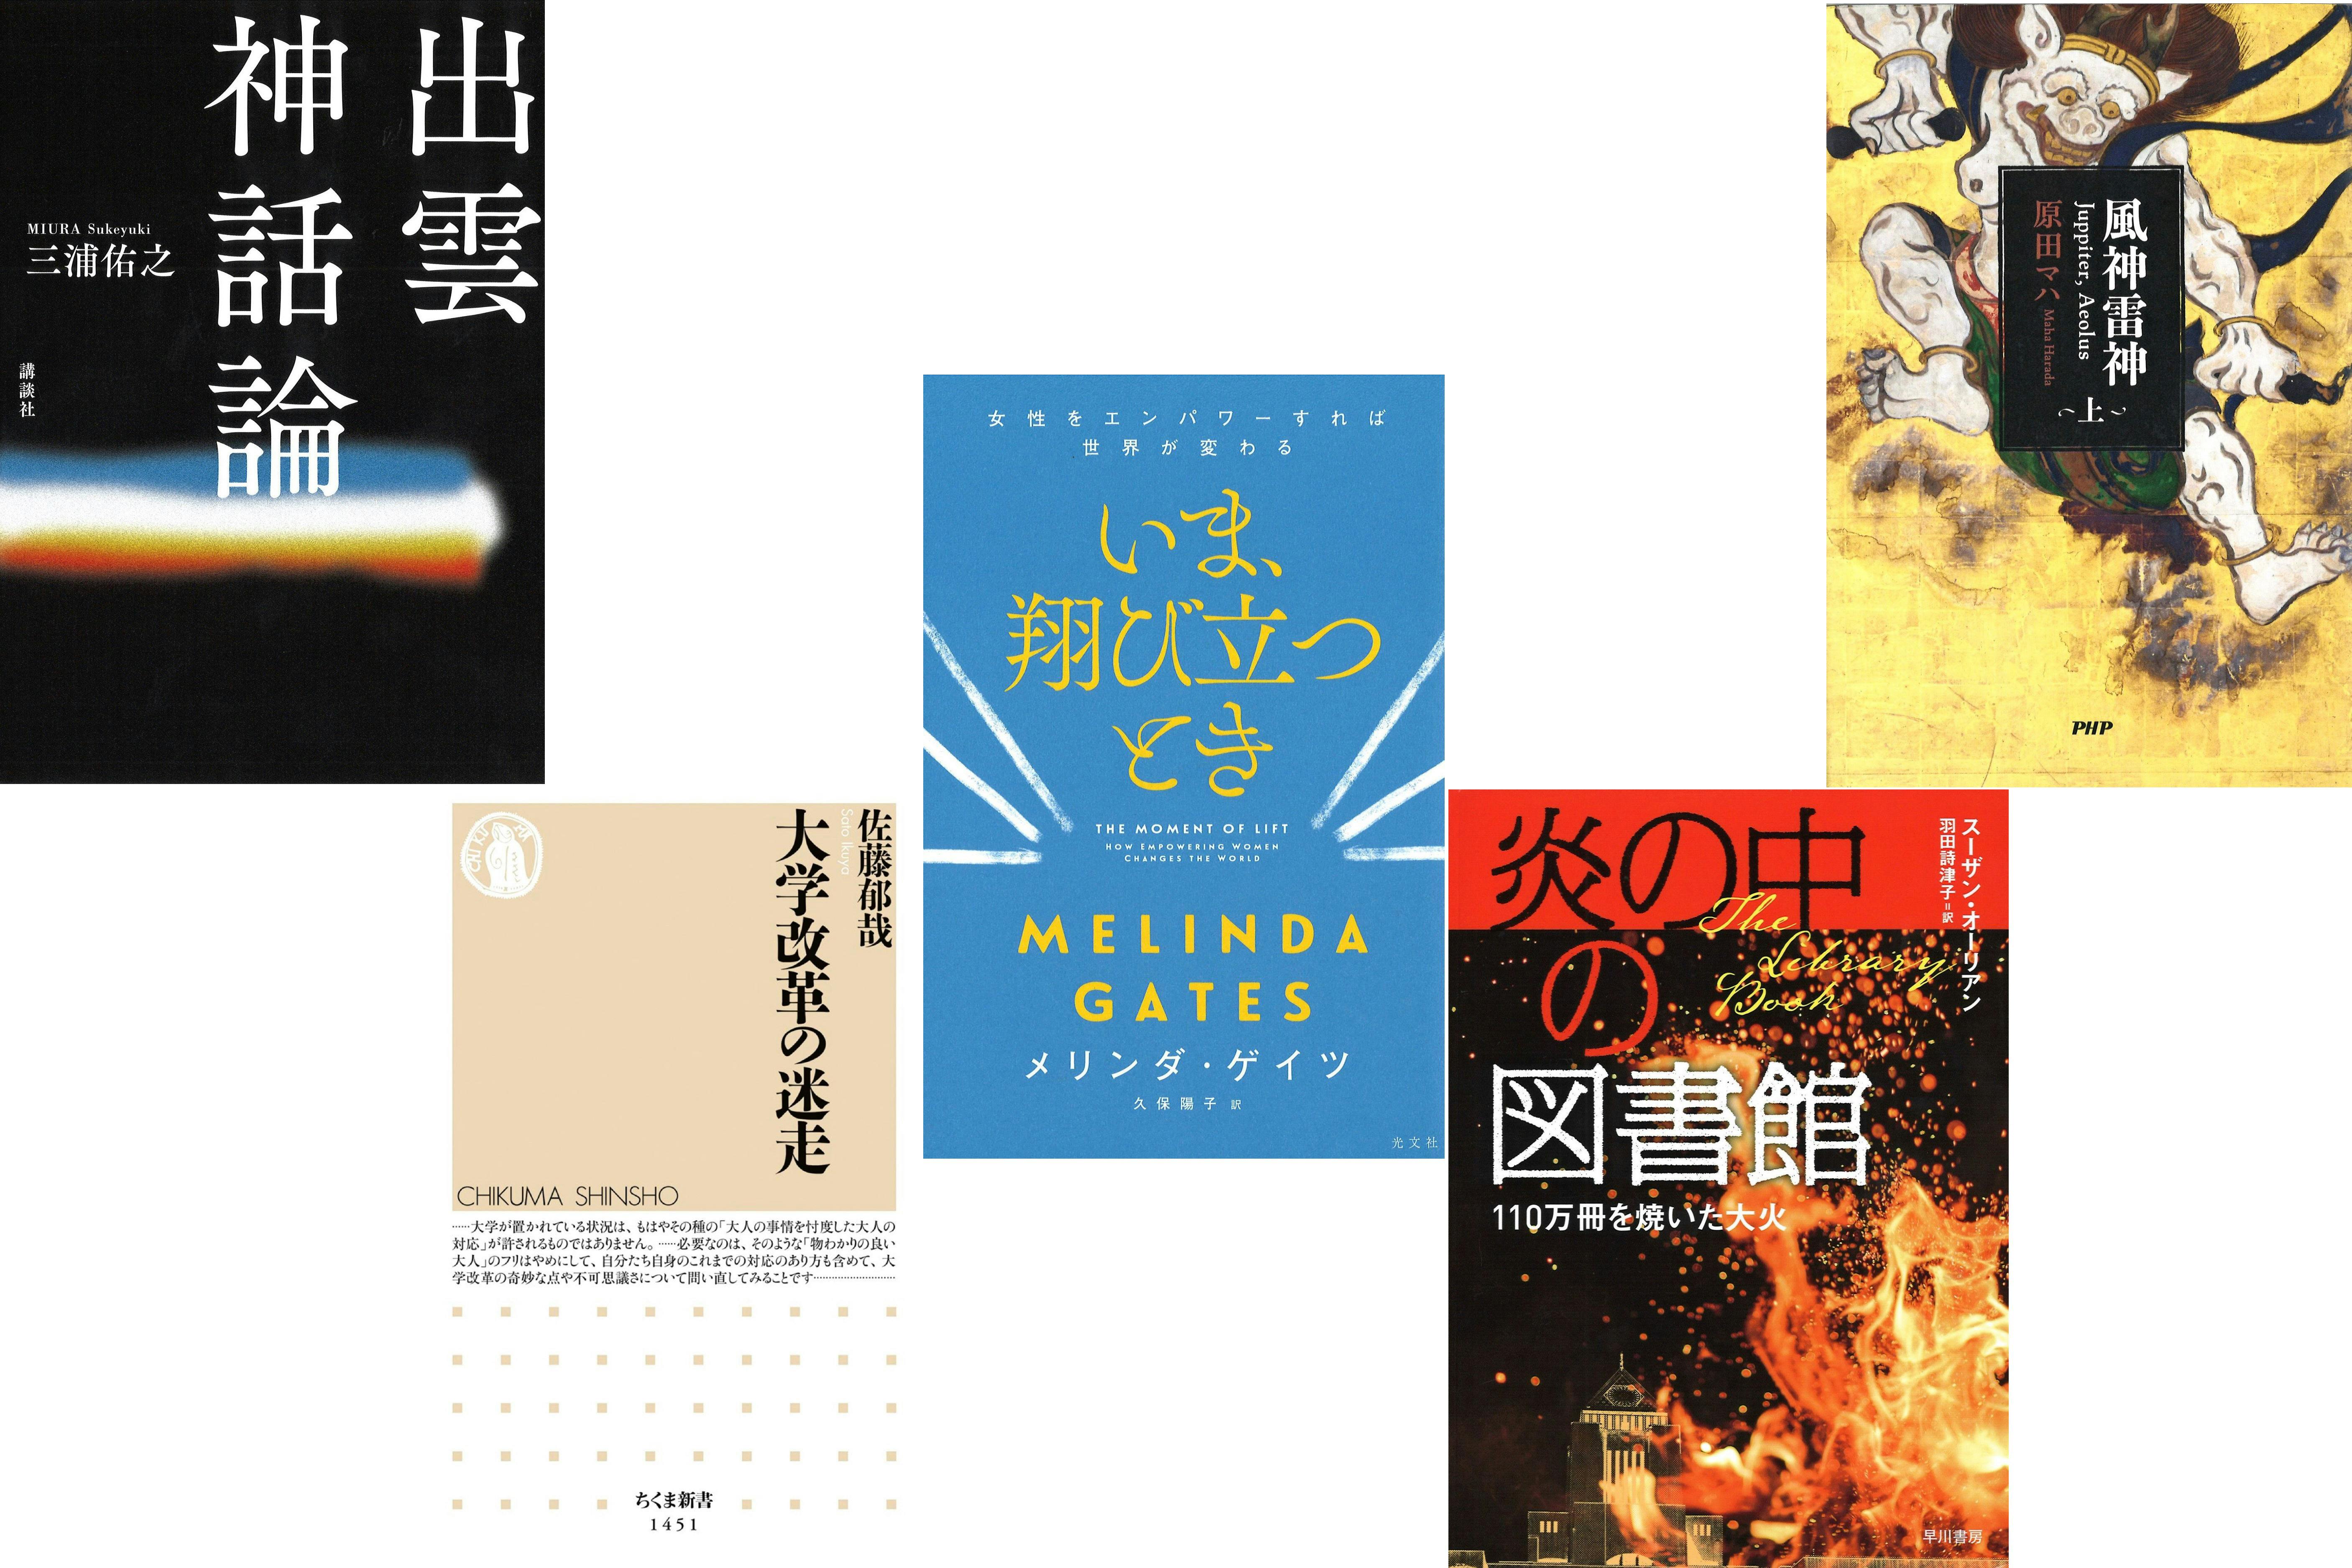 メリンダ ゲイツの初の著書 日経読書面今週の5冊 ブック Nikkei Style